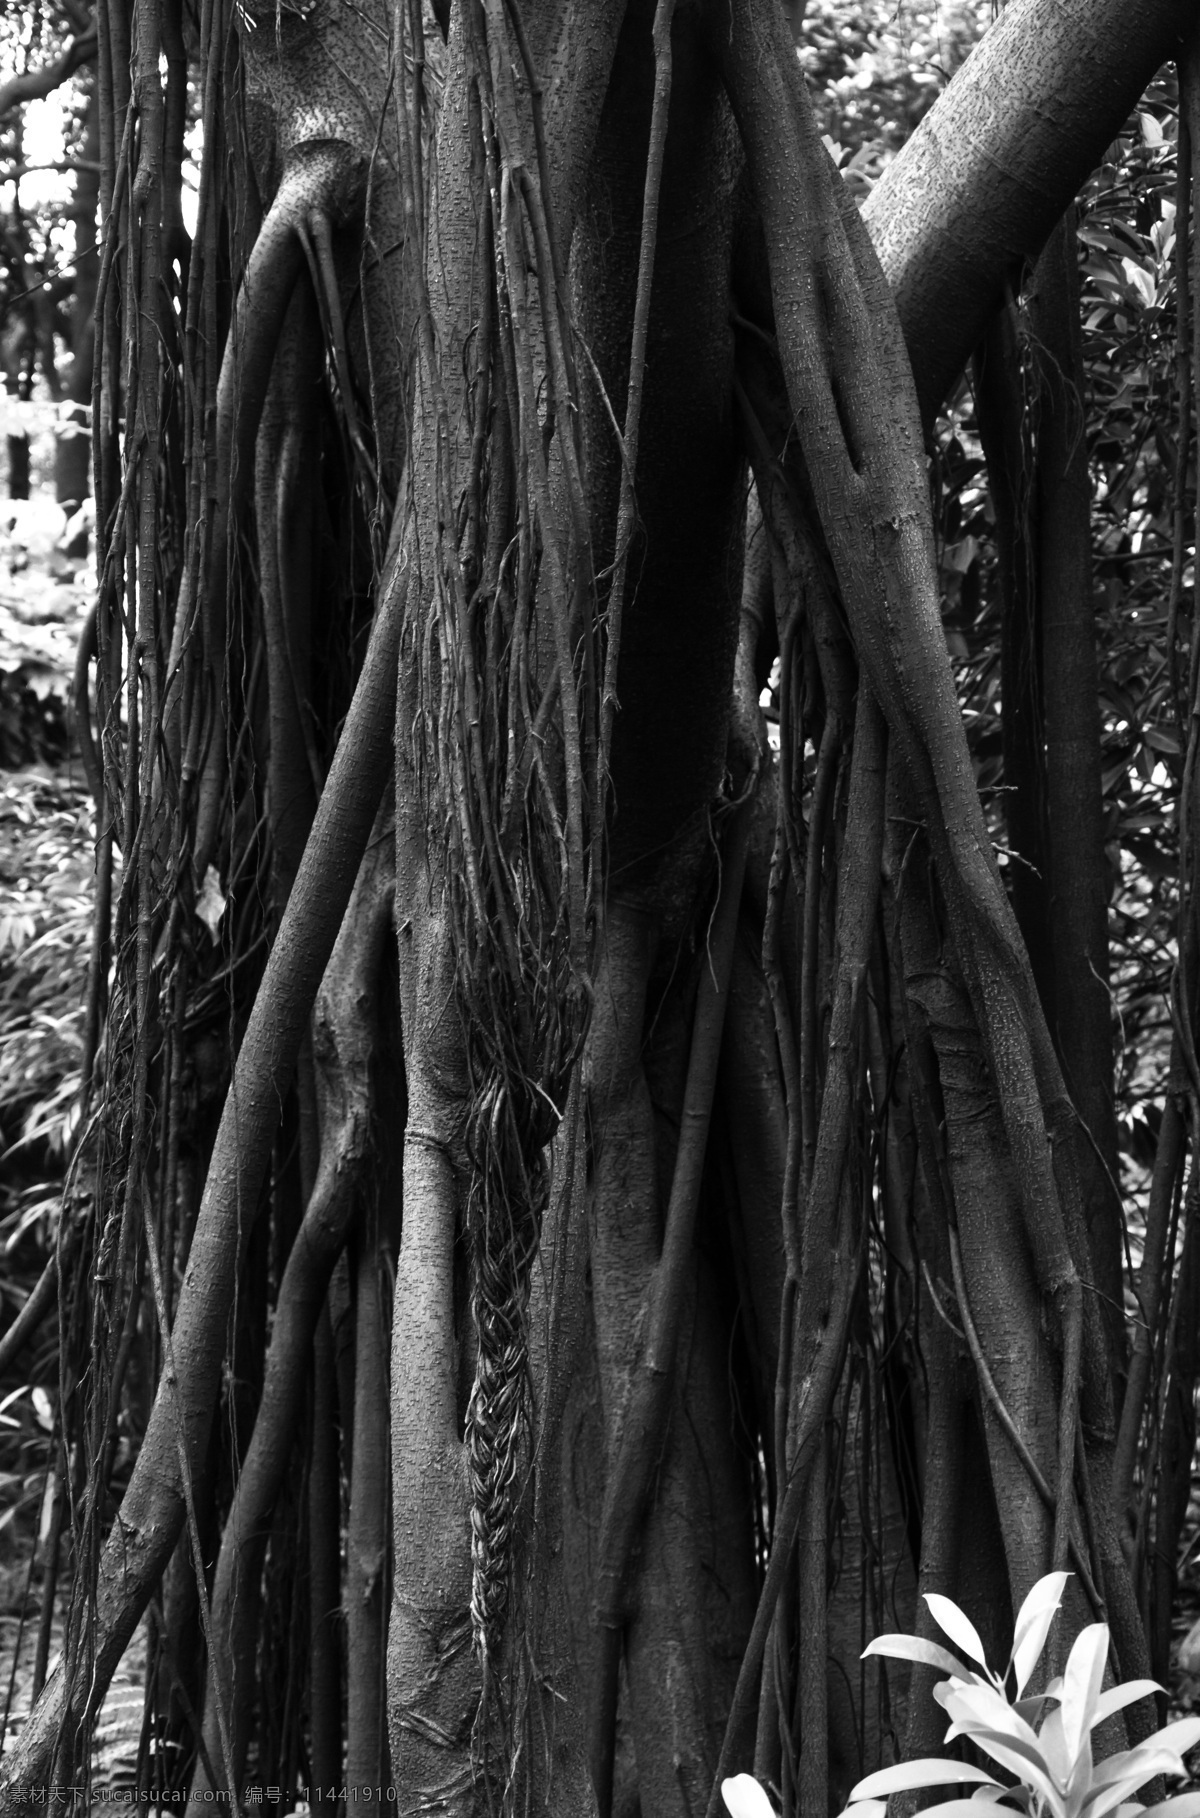 榕树的根 广州 白云山 榕树 阔叶榕 树根 根须 黑白 旅游摄影 生物世界 树木树叶